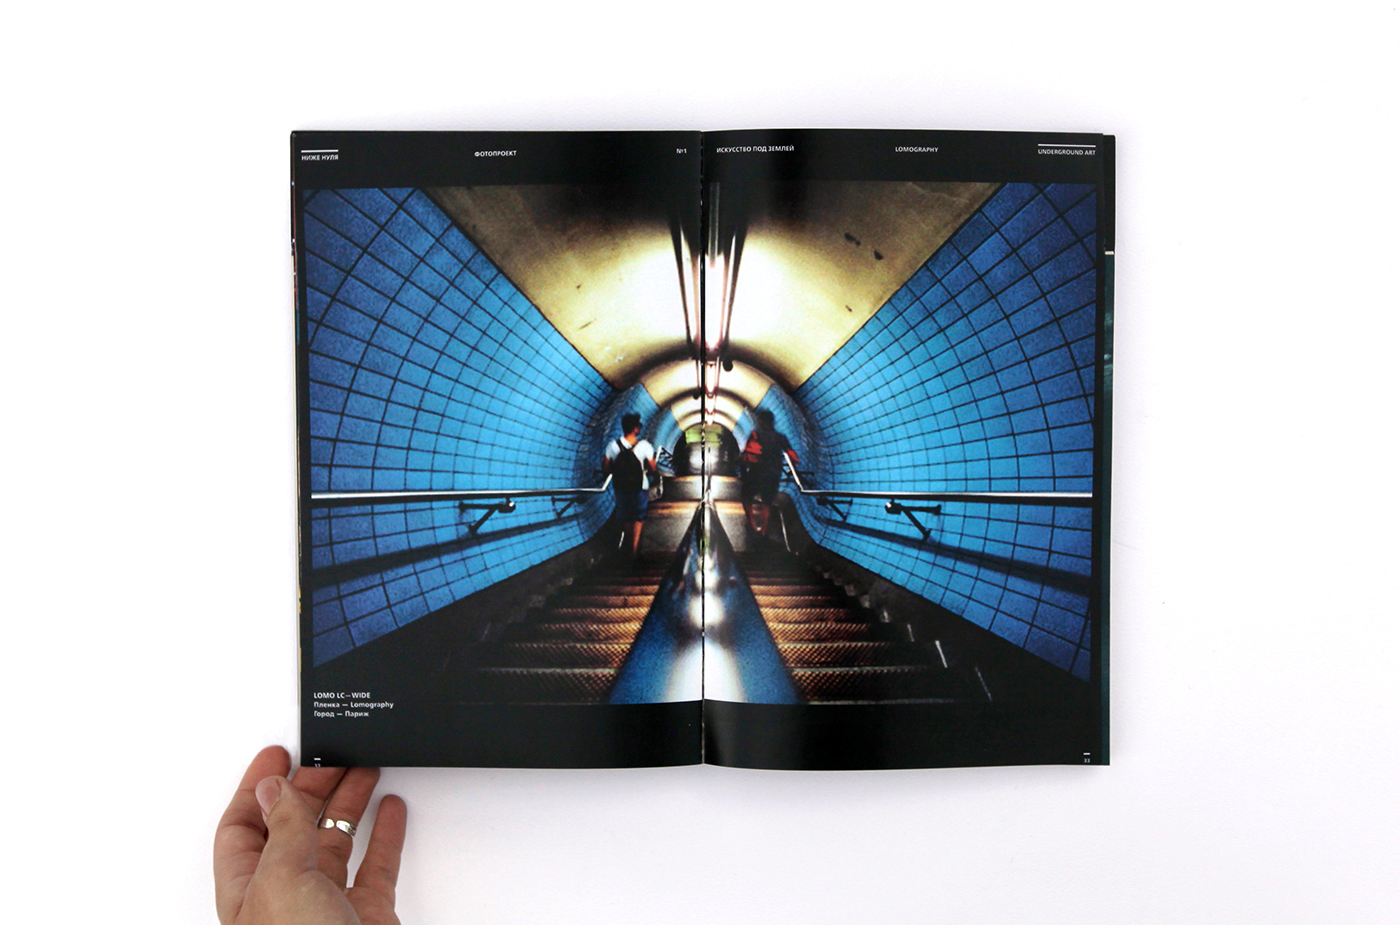 Below zero poster almanac magazine editorial design underground